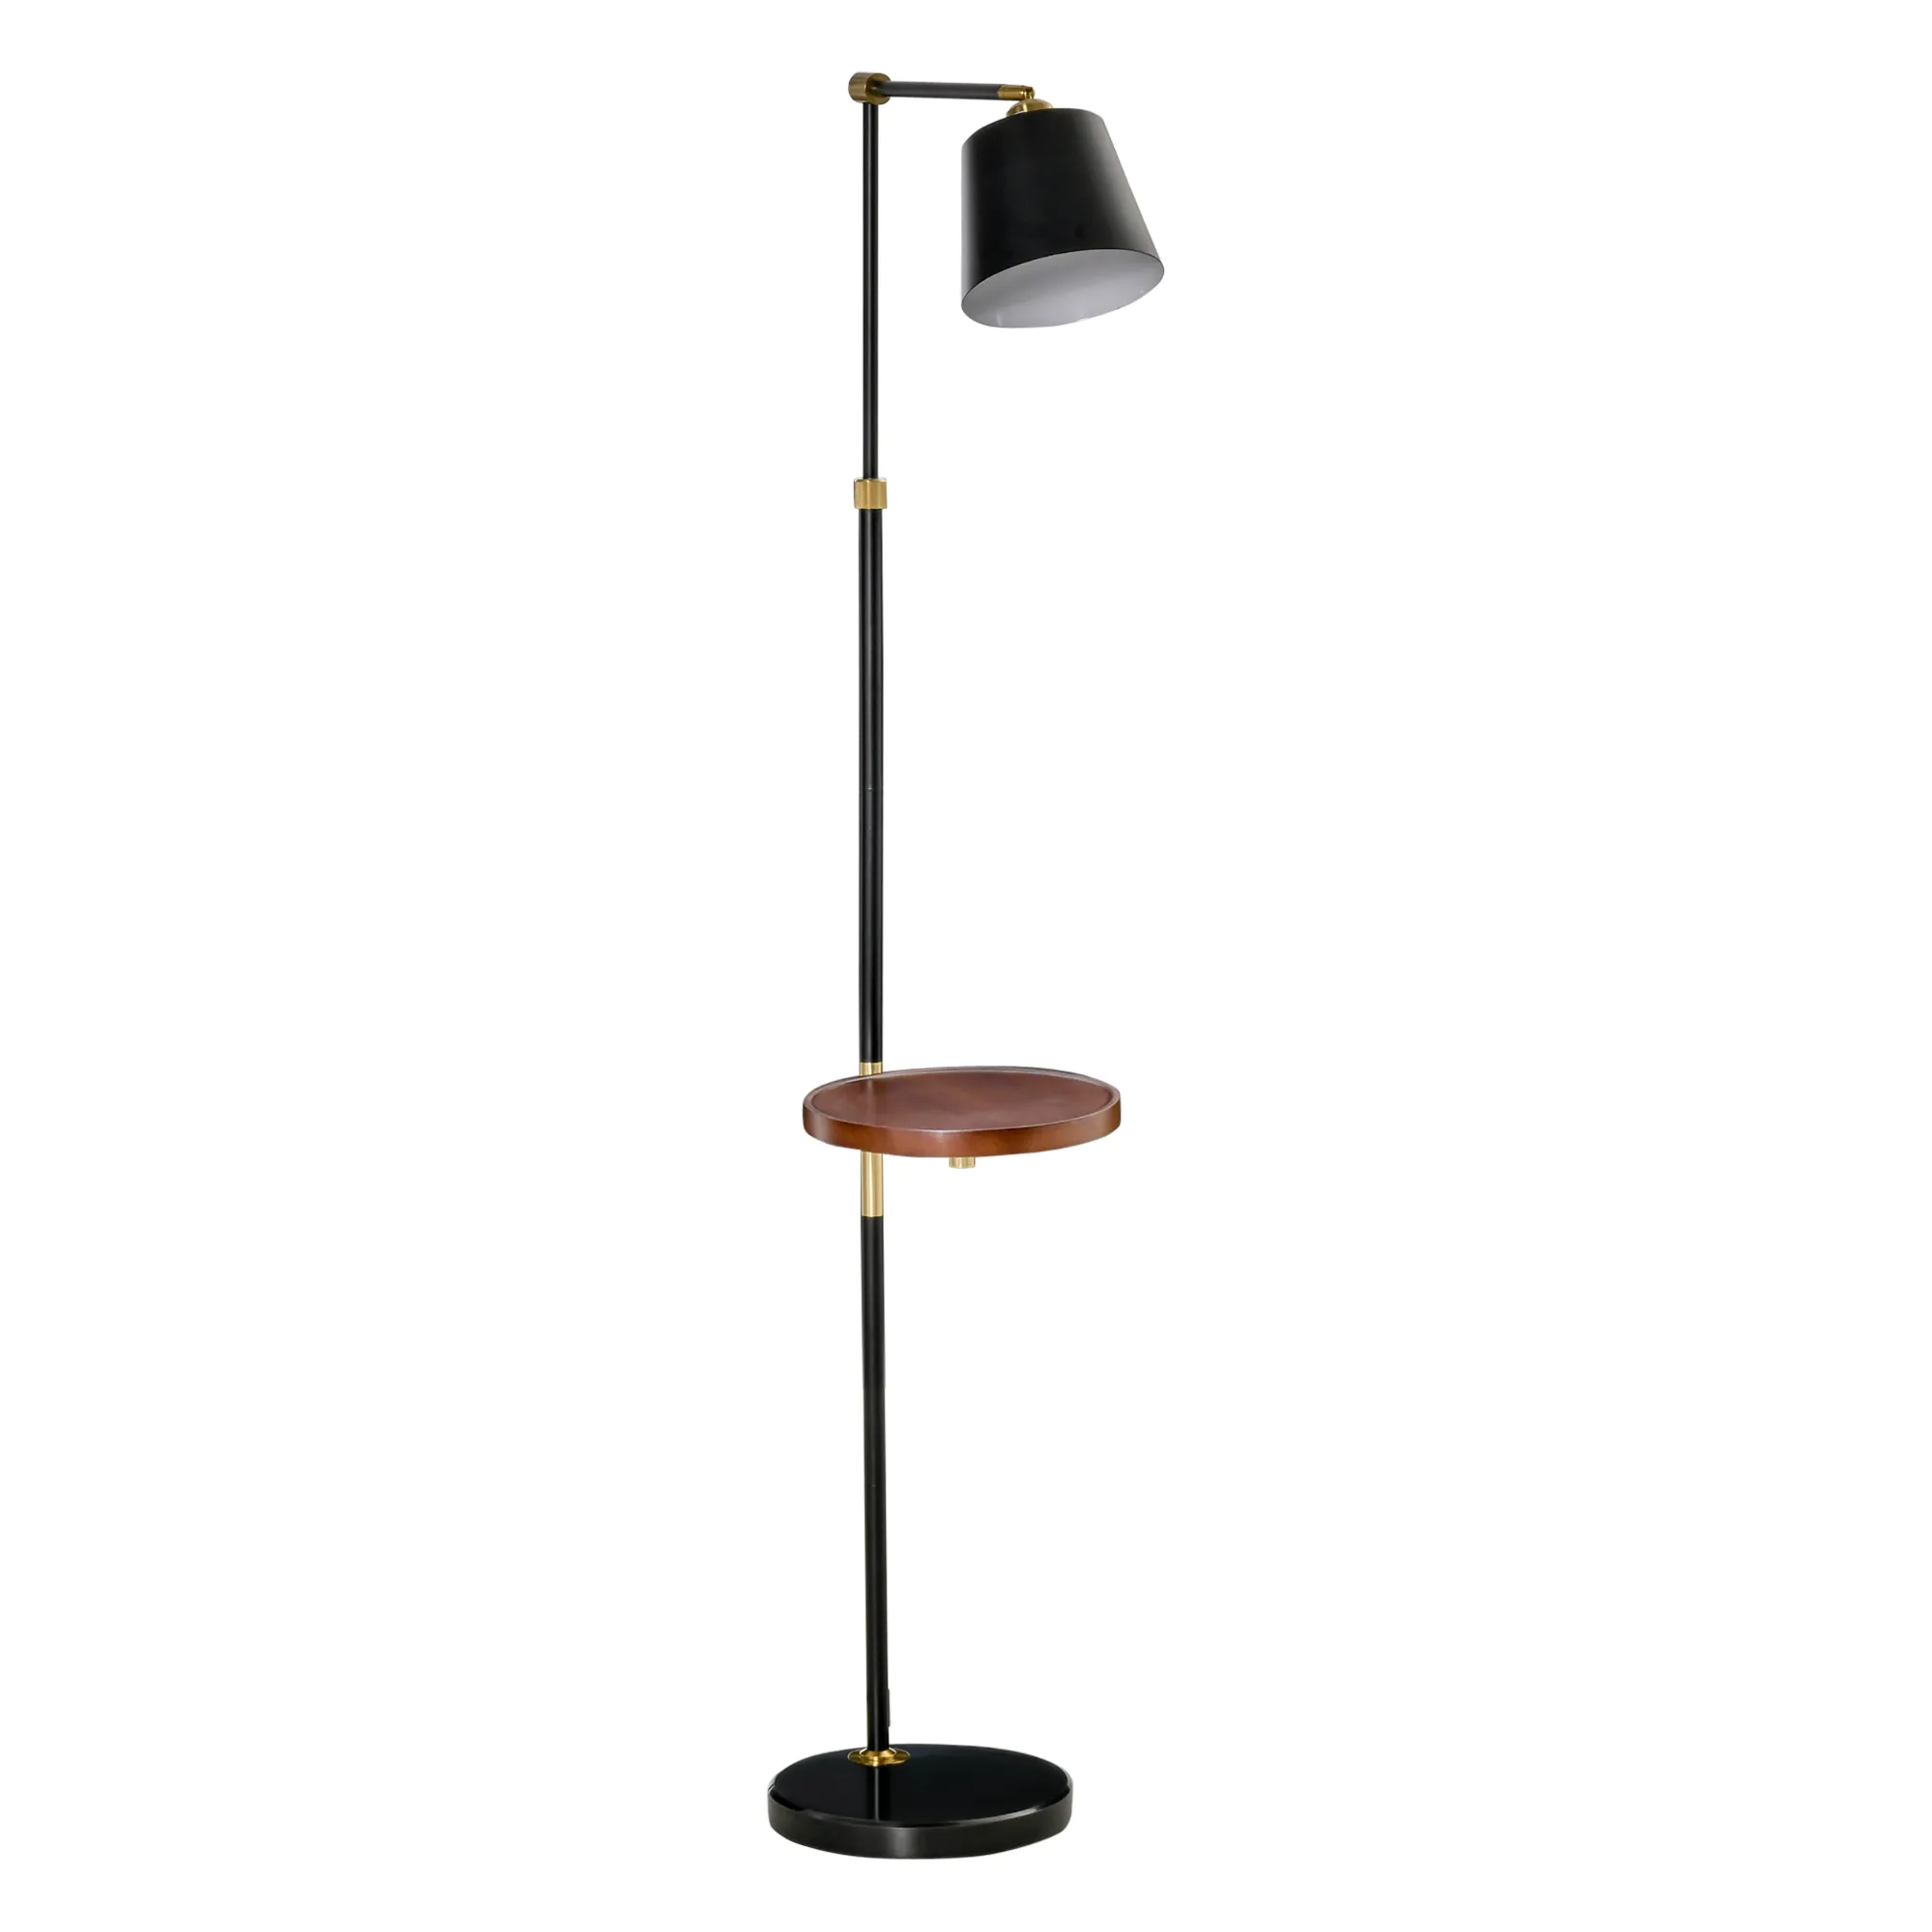  Lampada da Terra in Stile Vintage con Ripiano, Lampada da Pavimento Compatibile con Lampadine E27 da 40W, Metallo Nero e Oro